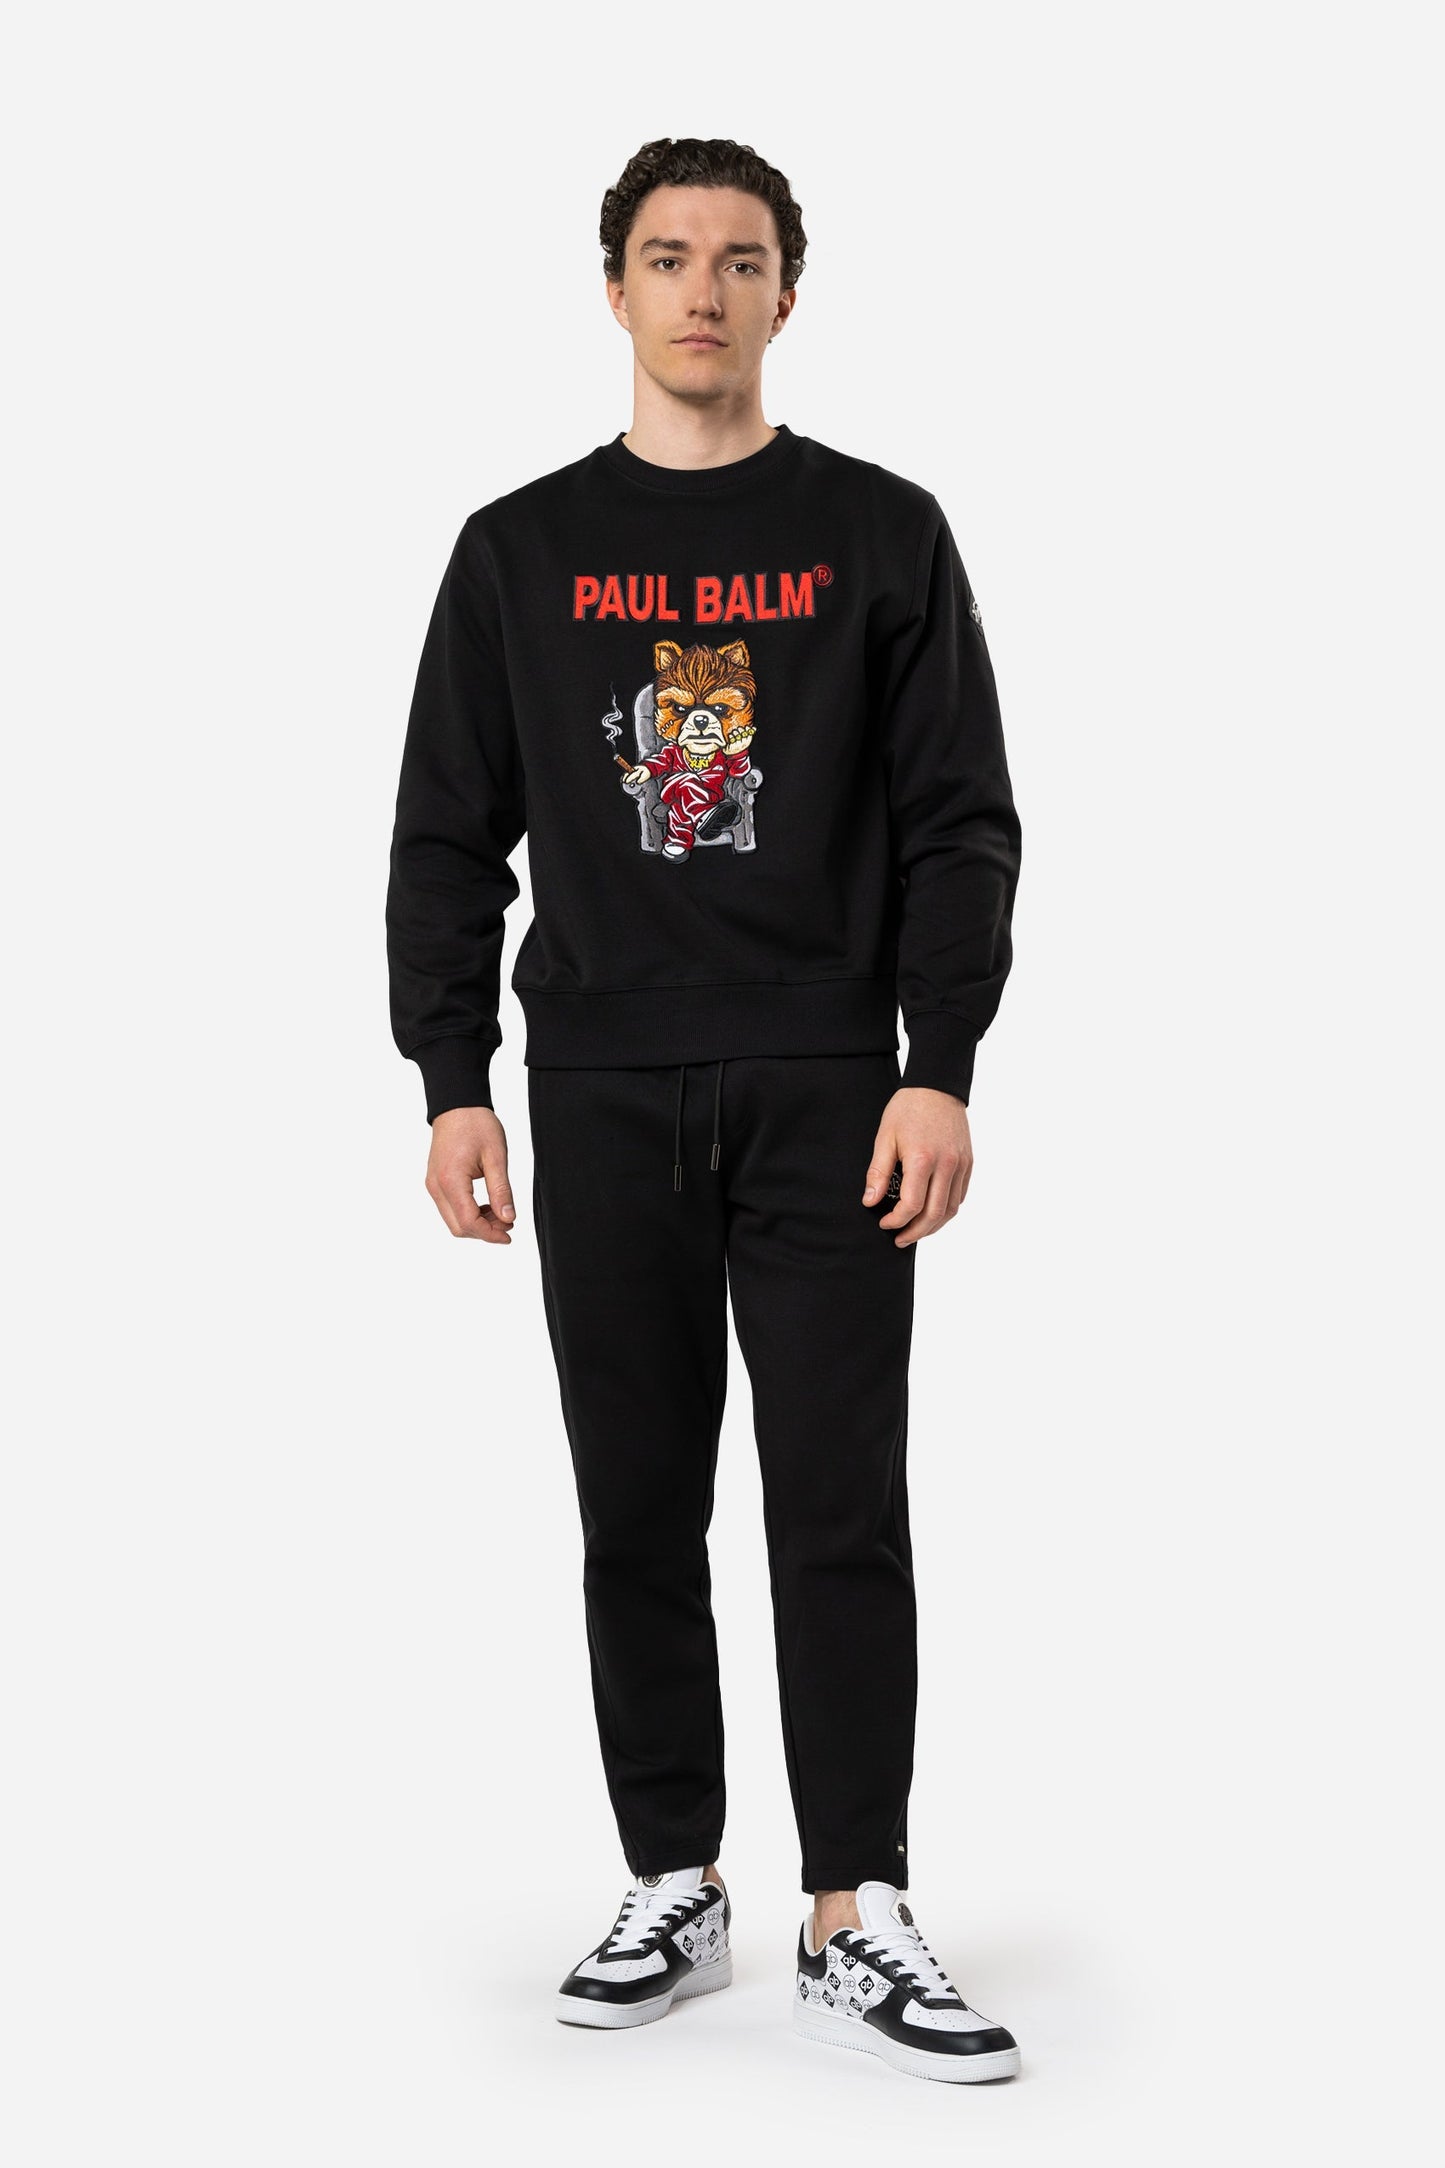 Paul Balm: Yuki Boss Embroidery Sweatshirt - Limited to 300